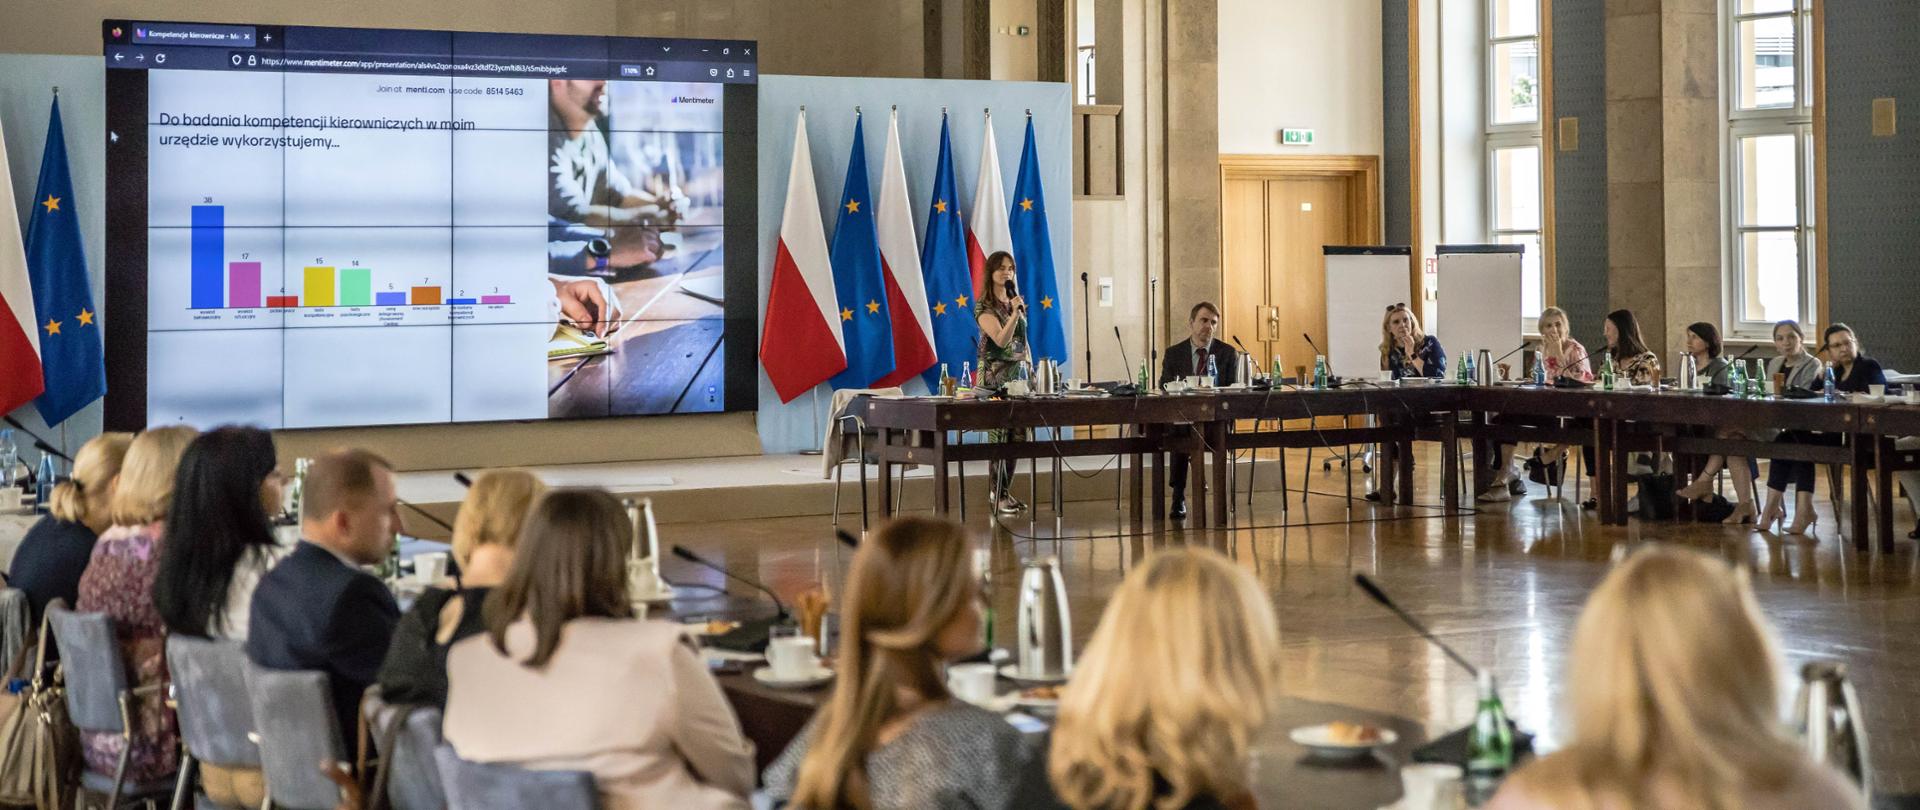 Kobieta stoi i przemawia do mikrofonu, za nią widać ekran na którym wyświetlana jest prezentacja. Obok ekranu flagi Polski i Unii Europejskiej